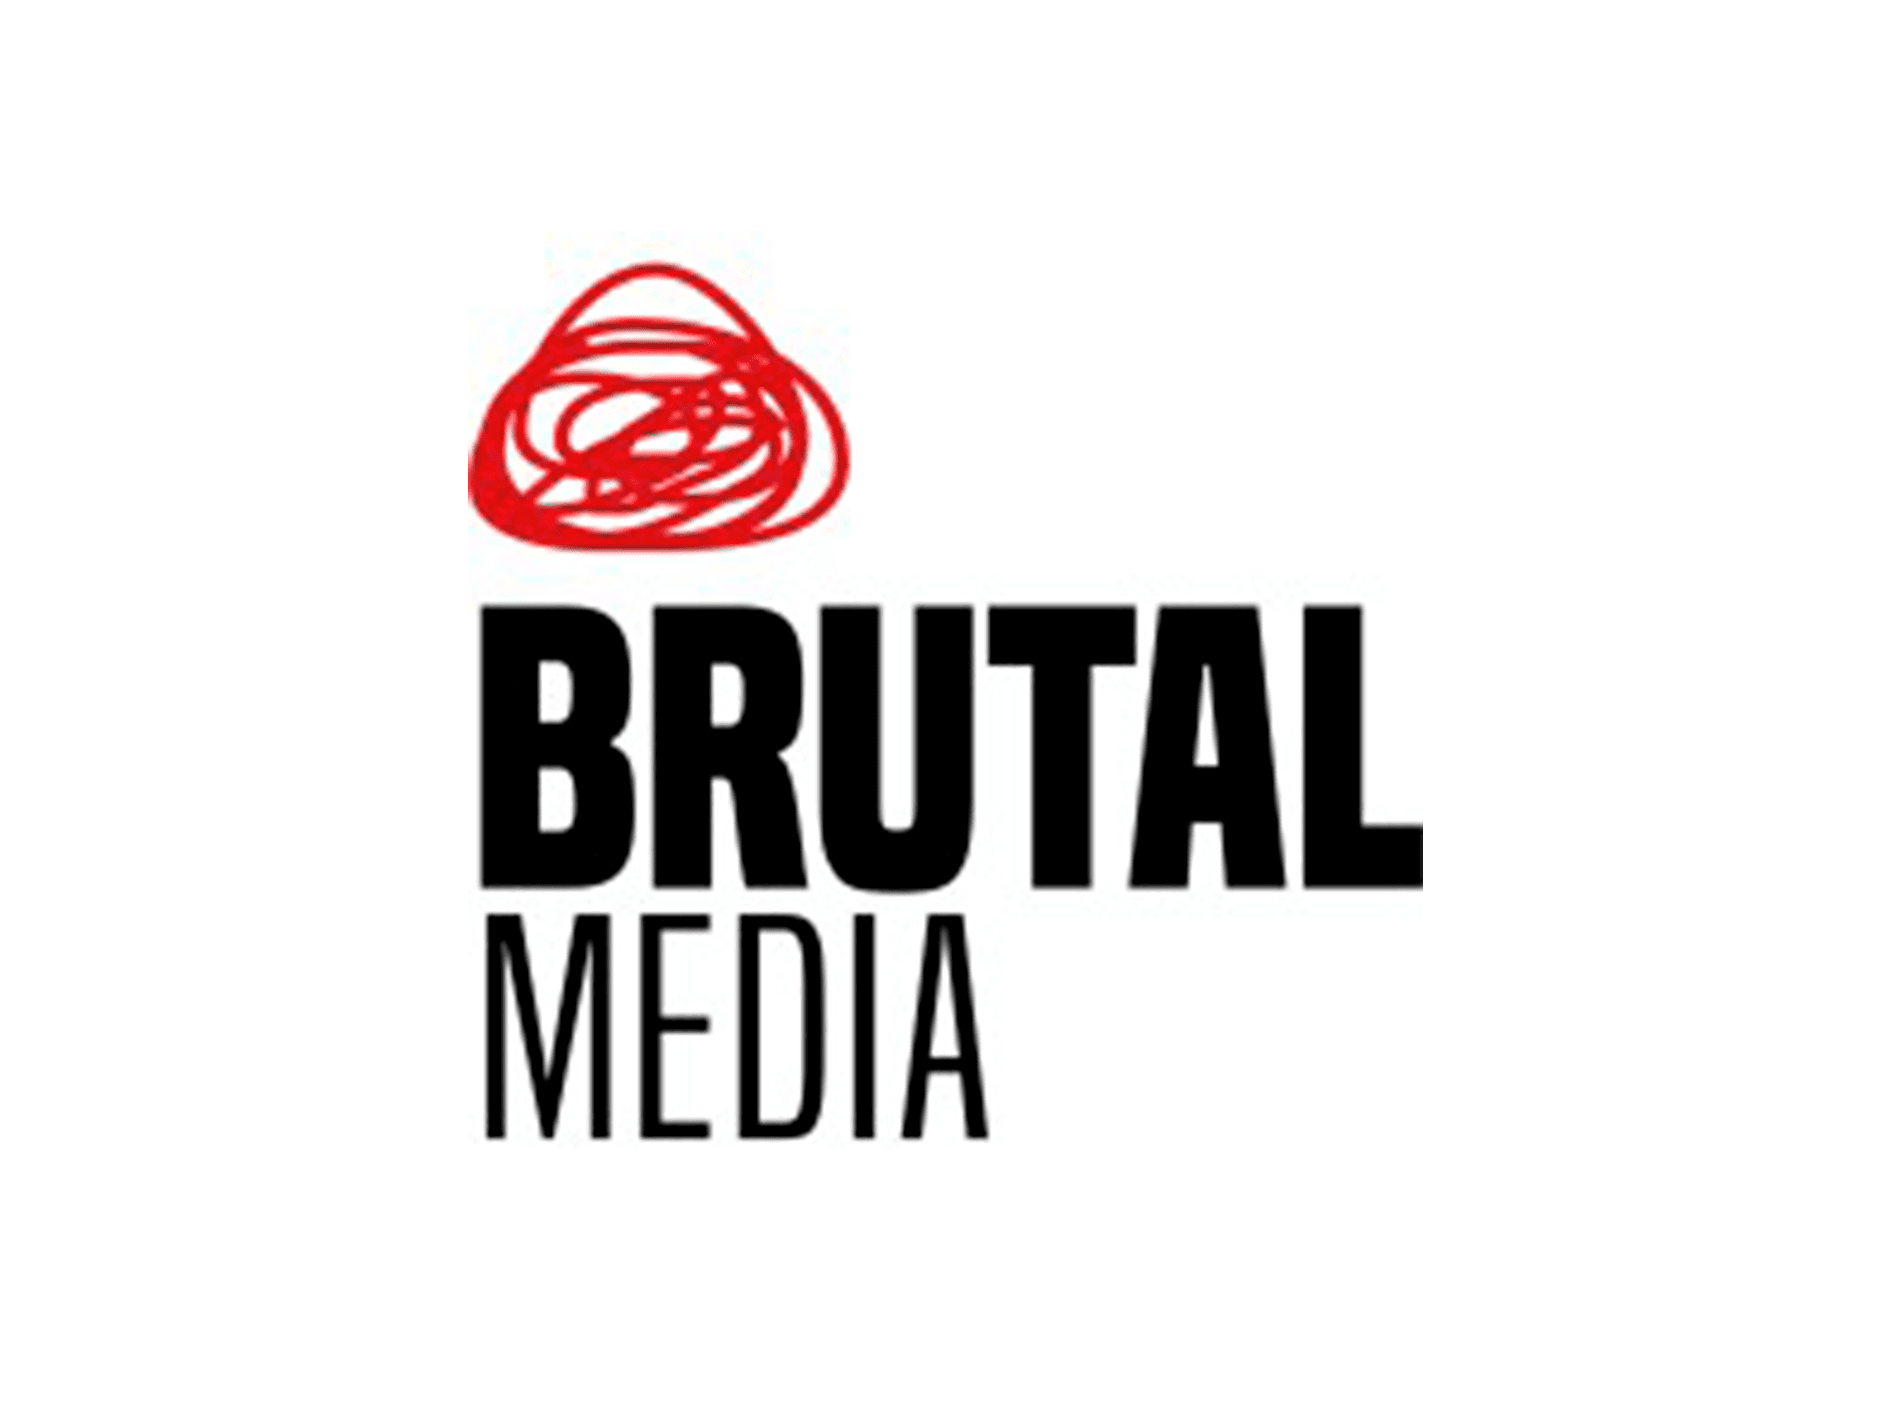 Brutal Media